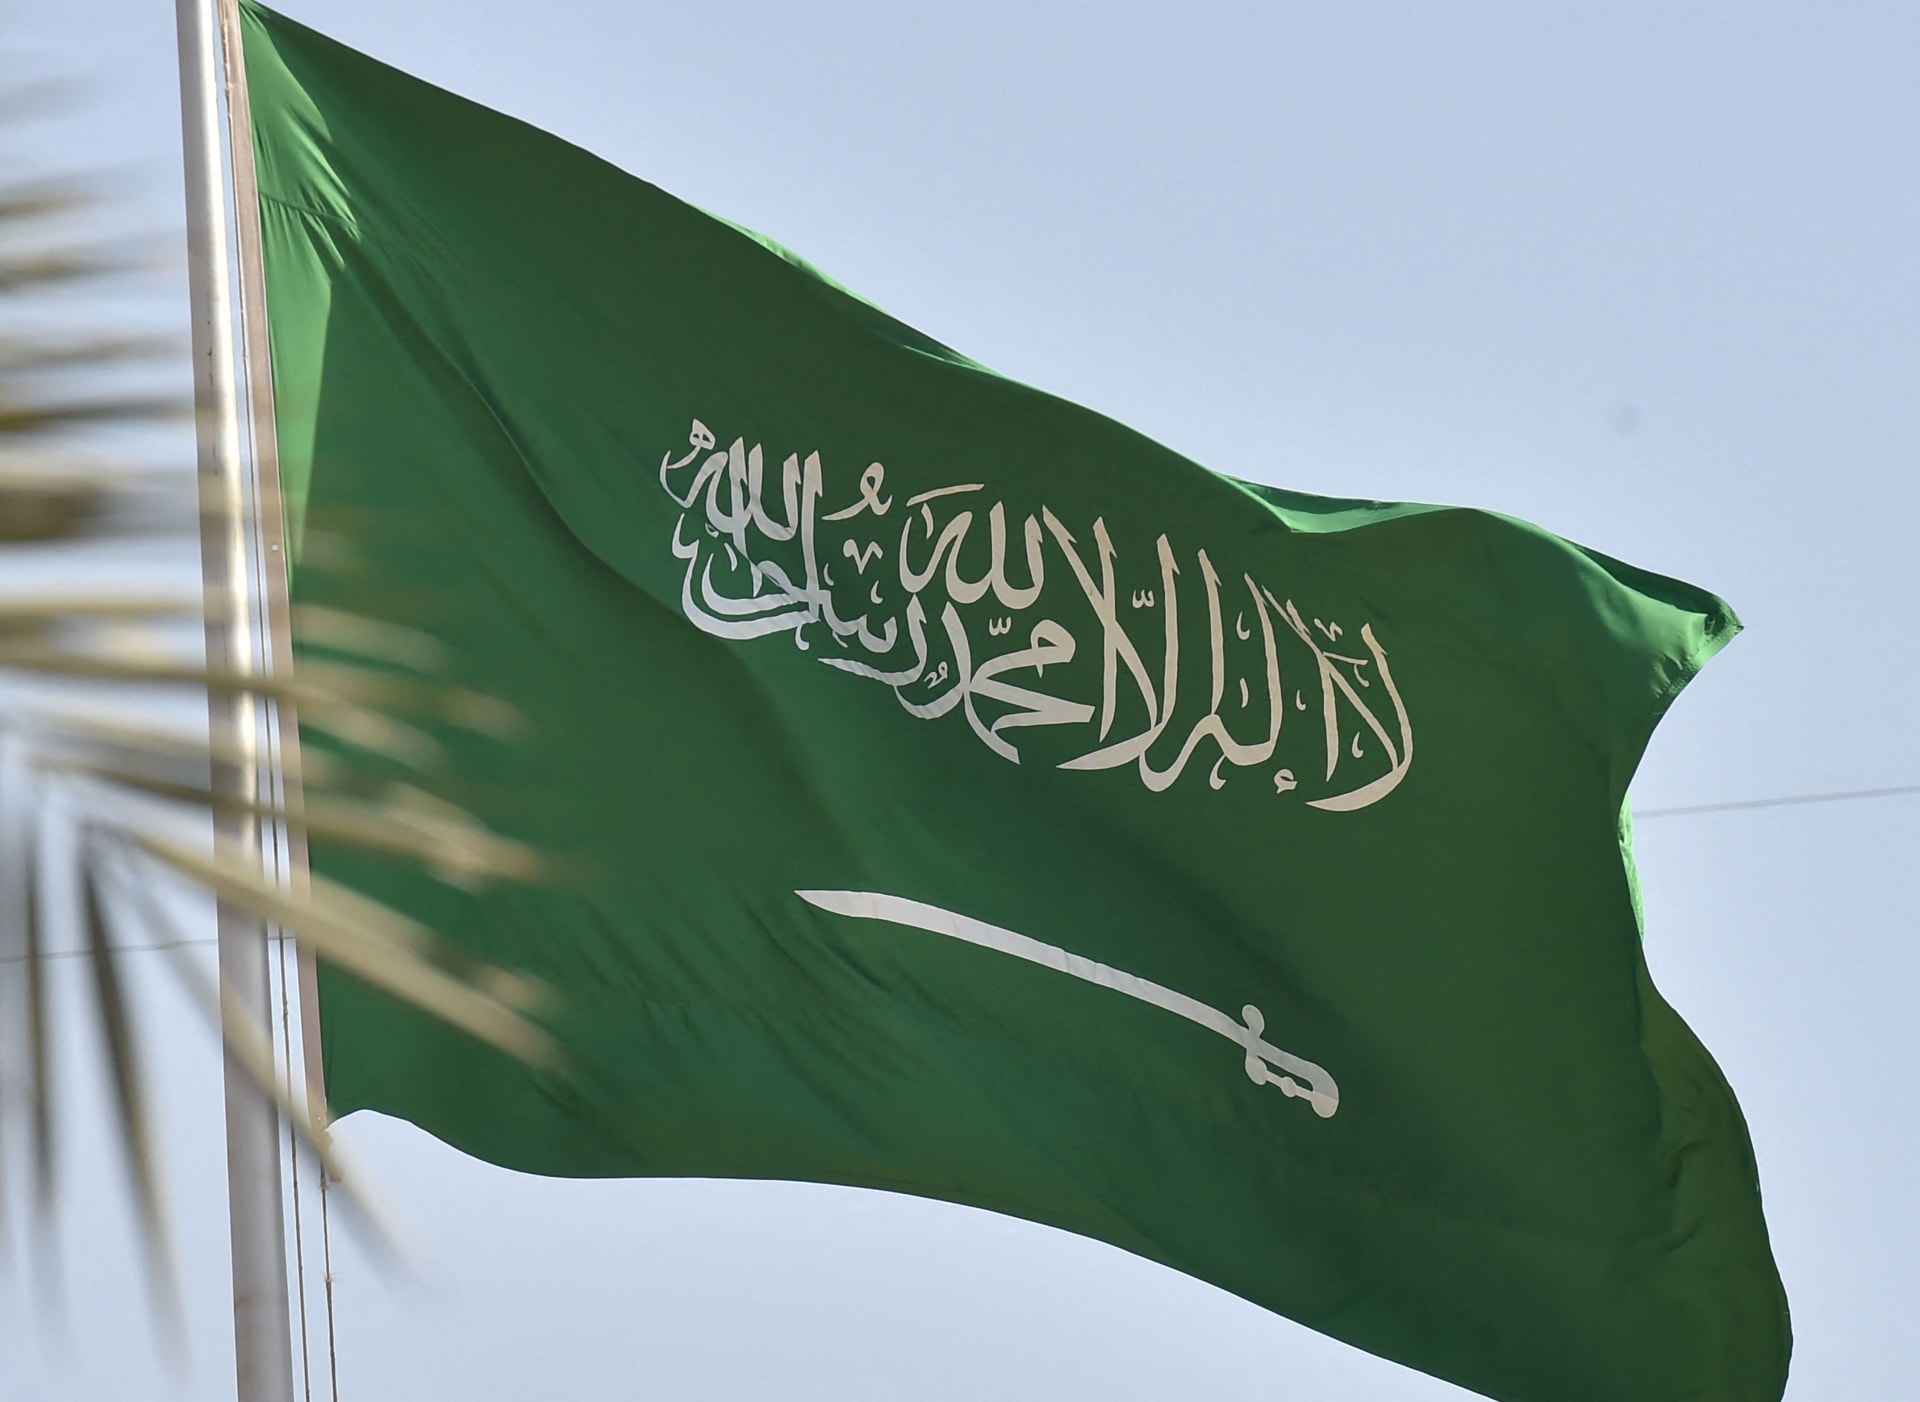 السعودية: العقوبة والحبس وغرامة مالية ثمينة لمن يقوم بهذا الفعل بعد اليوم !!